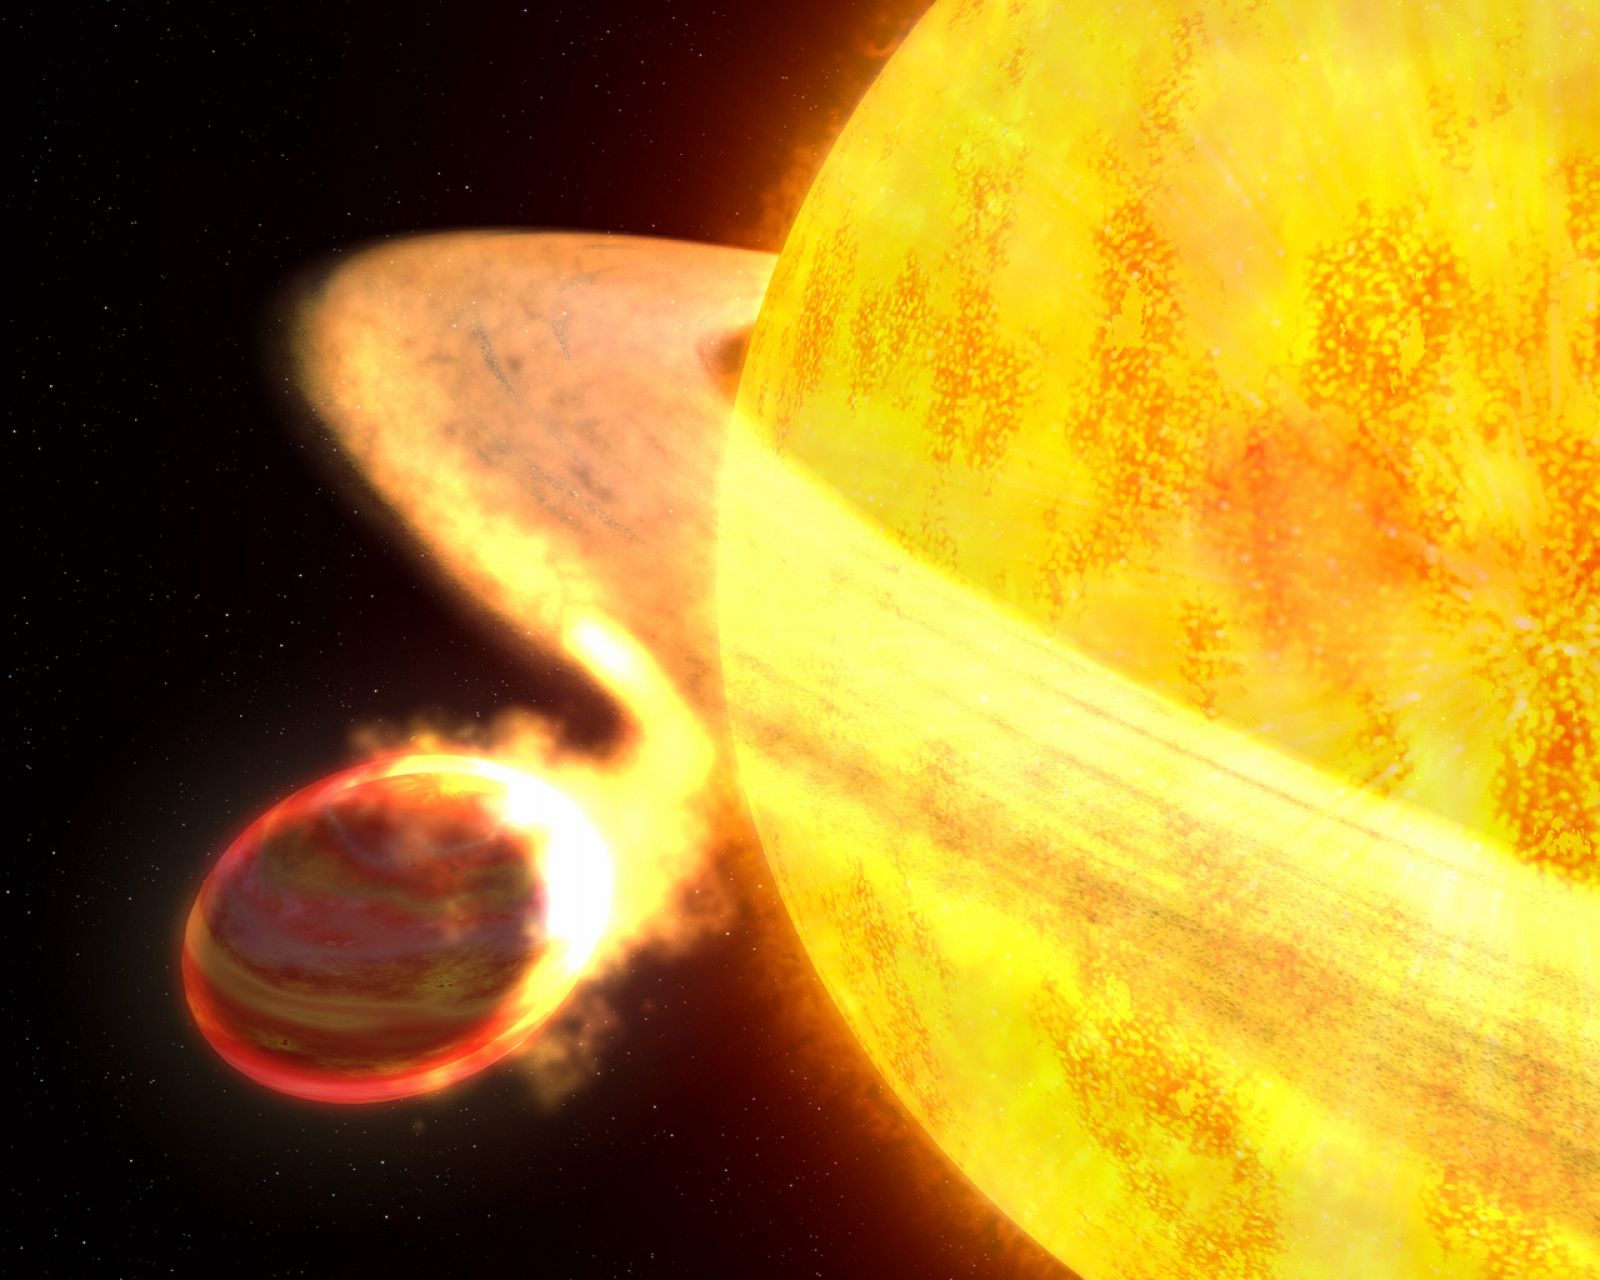 El exoplaneta, identificado como WASP-12b, está siendo absorbido poco a poco por su 'Sol'.